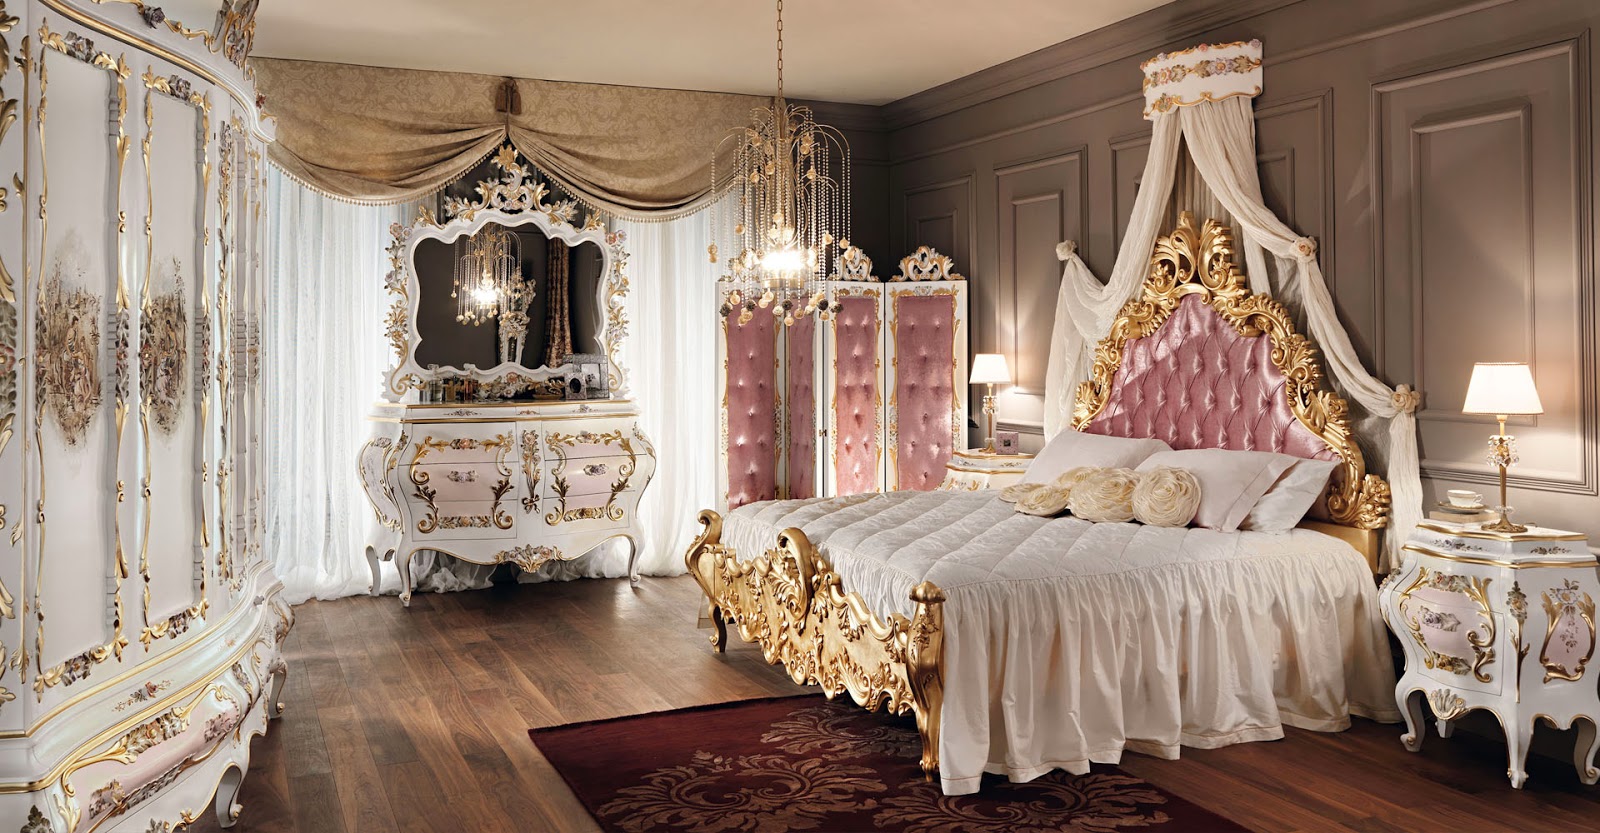 Royal_Bedroom_Home_Decoration_8.jpg